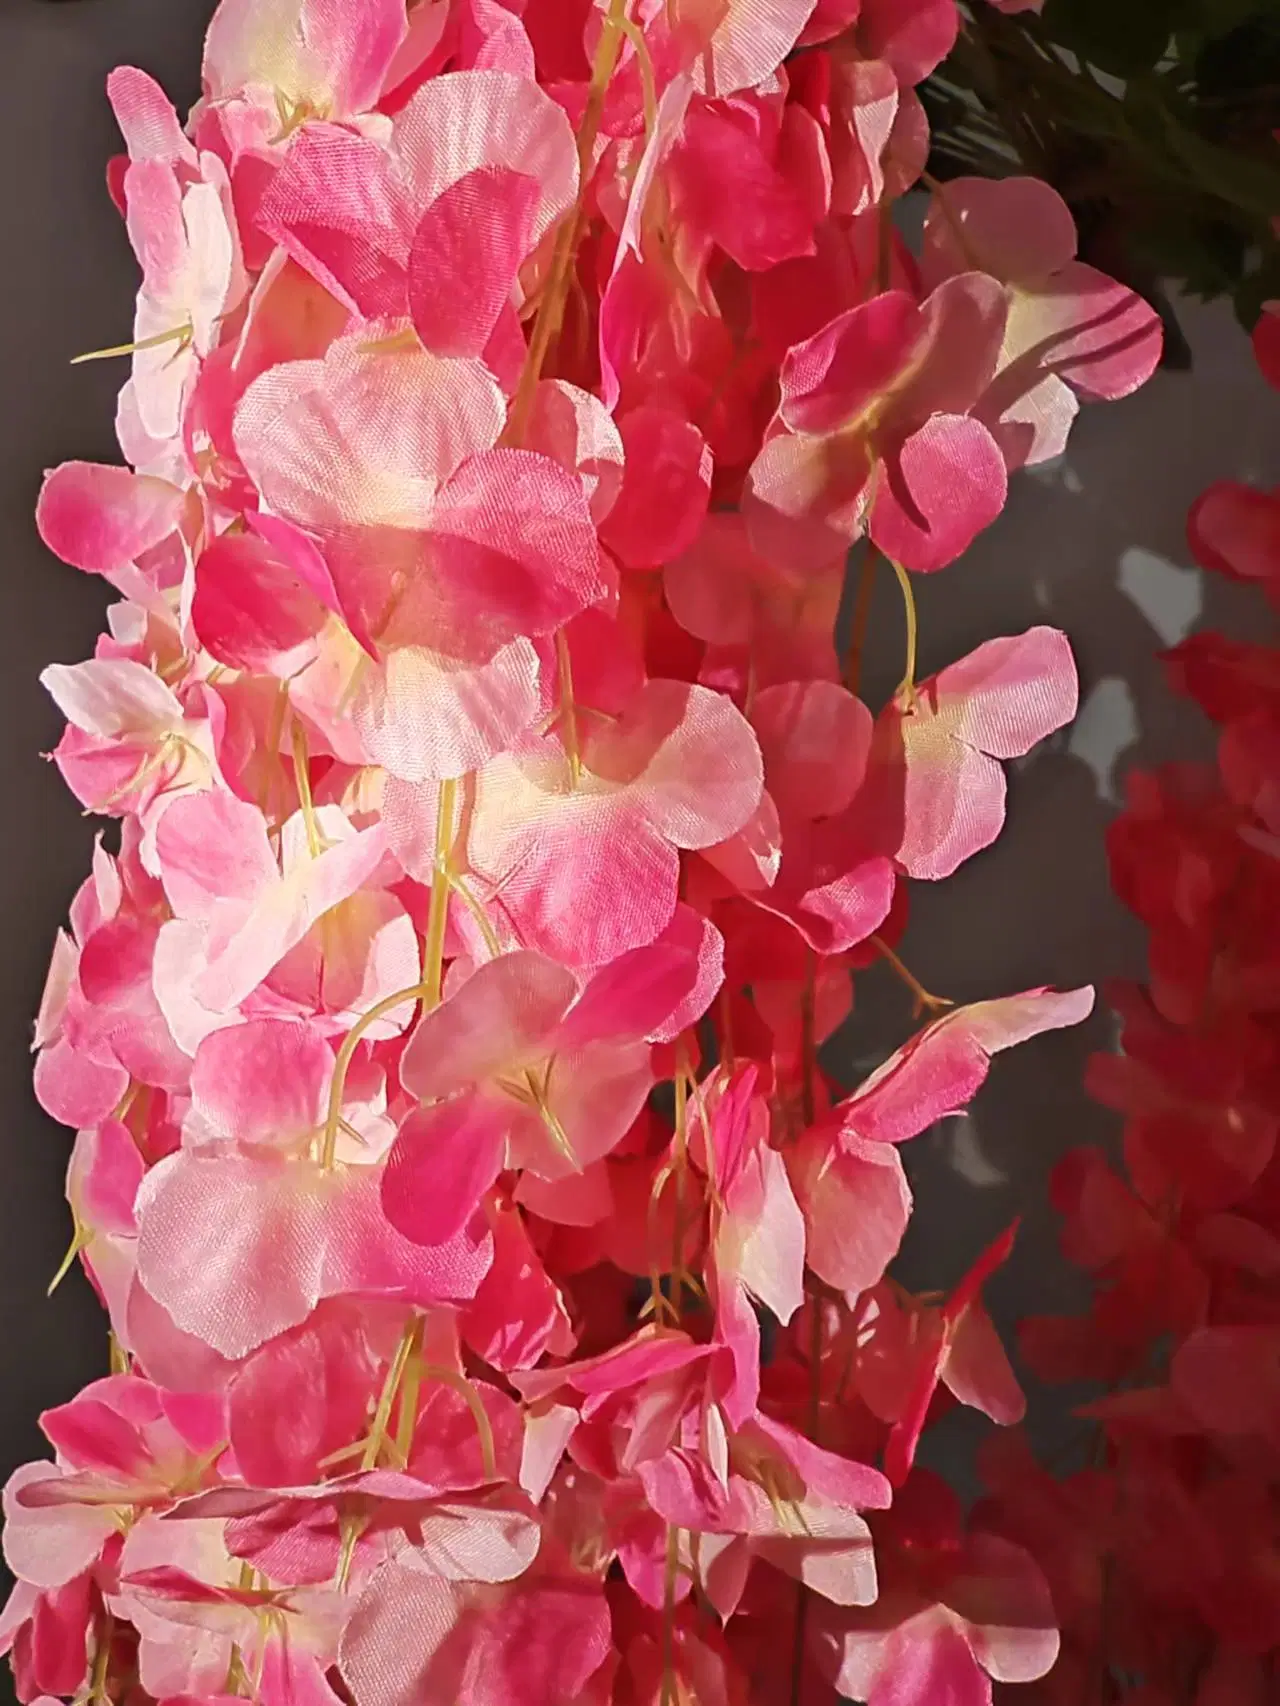 Großhandel/Lieferant Hochzeitsfeier Rosa Wisteria Blumen Künstliche Blumen Dekoration